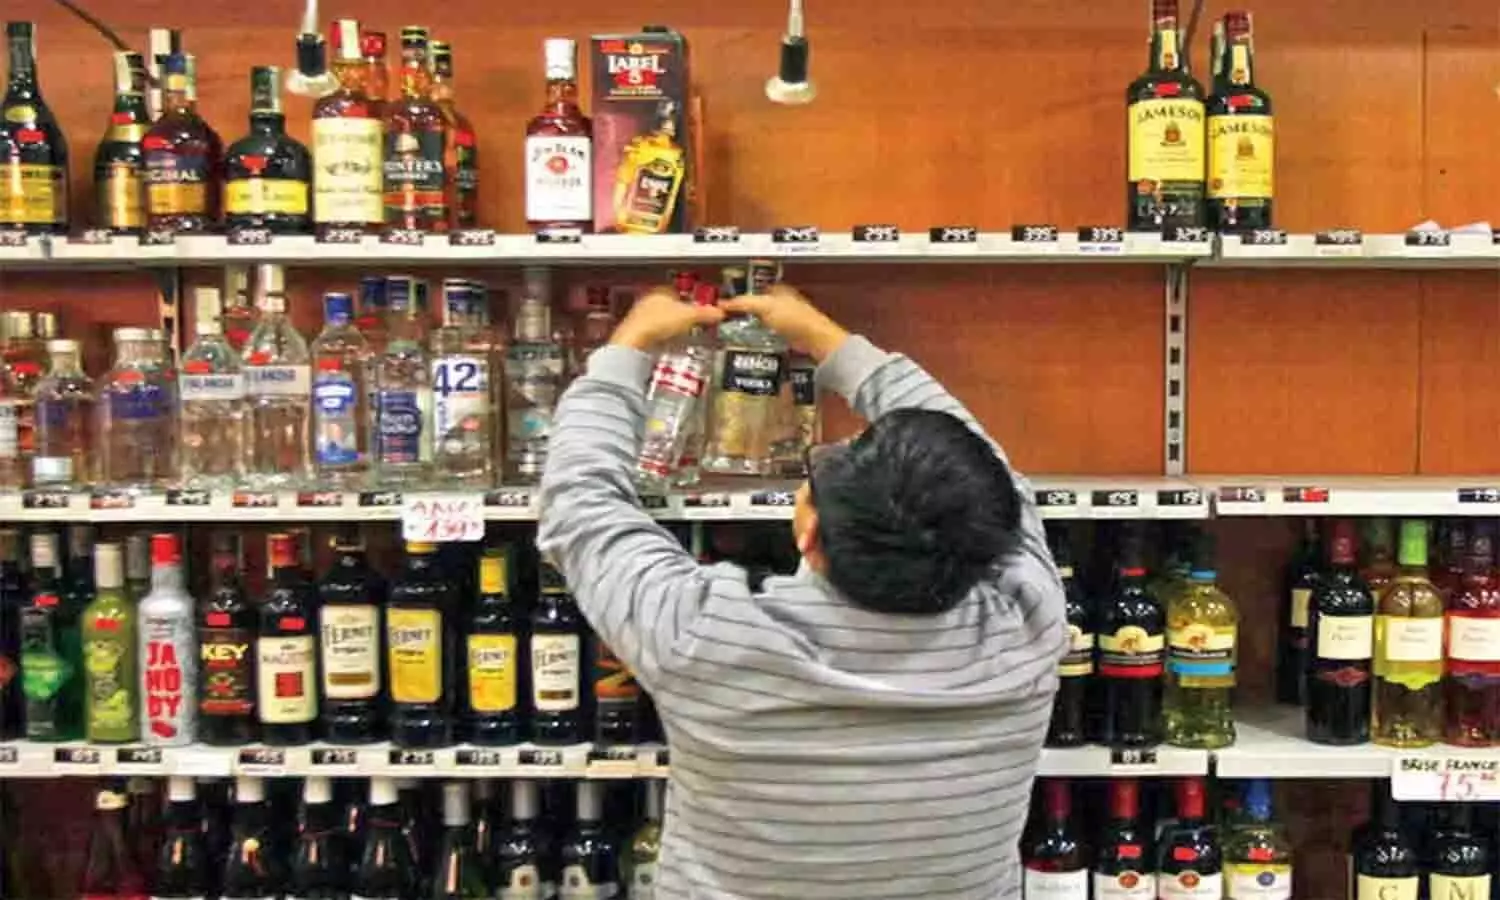 रीवा और मऊगंज जिले की 27 समूहों की मदिरा दुकानों की नीलामी को लेकर लेटेस्ट अपडेट